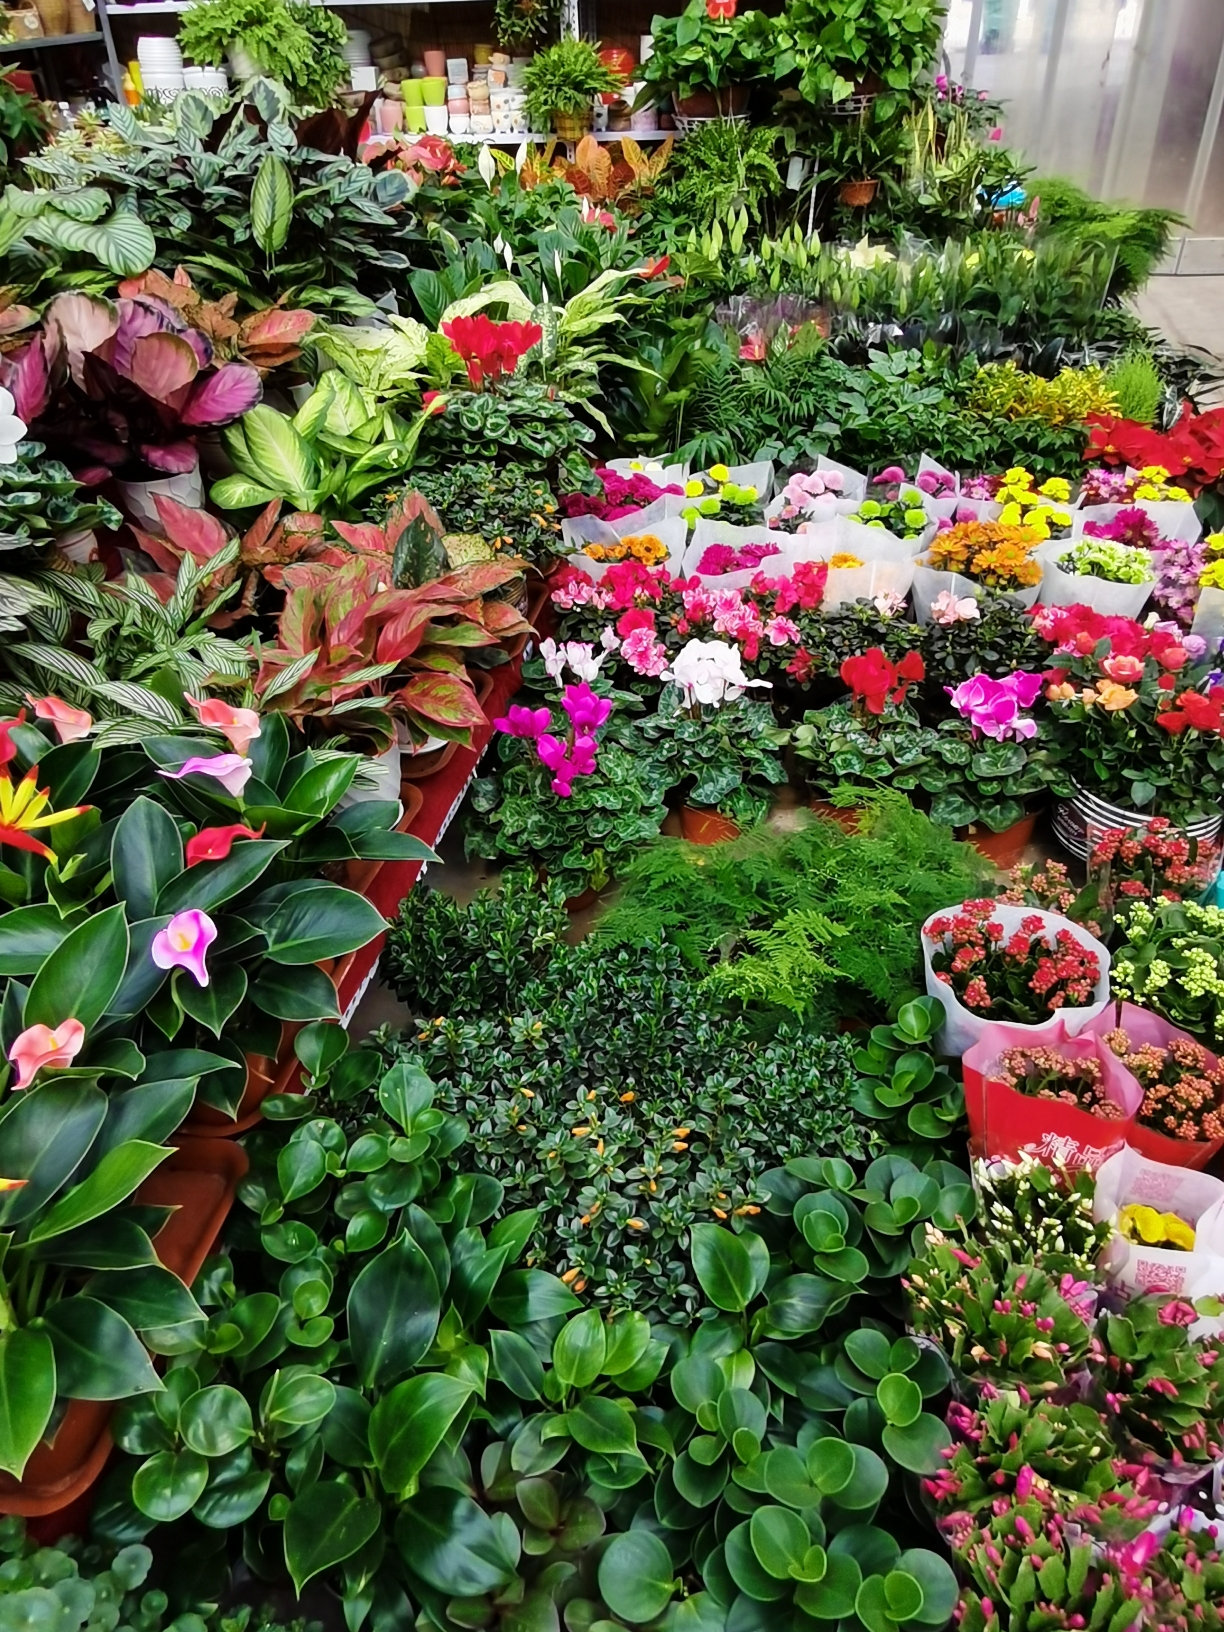 福州长乐花卉市场图片